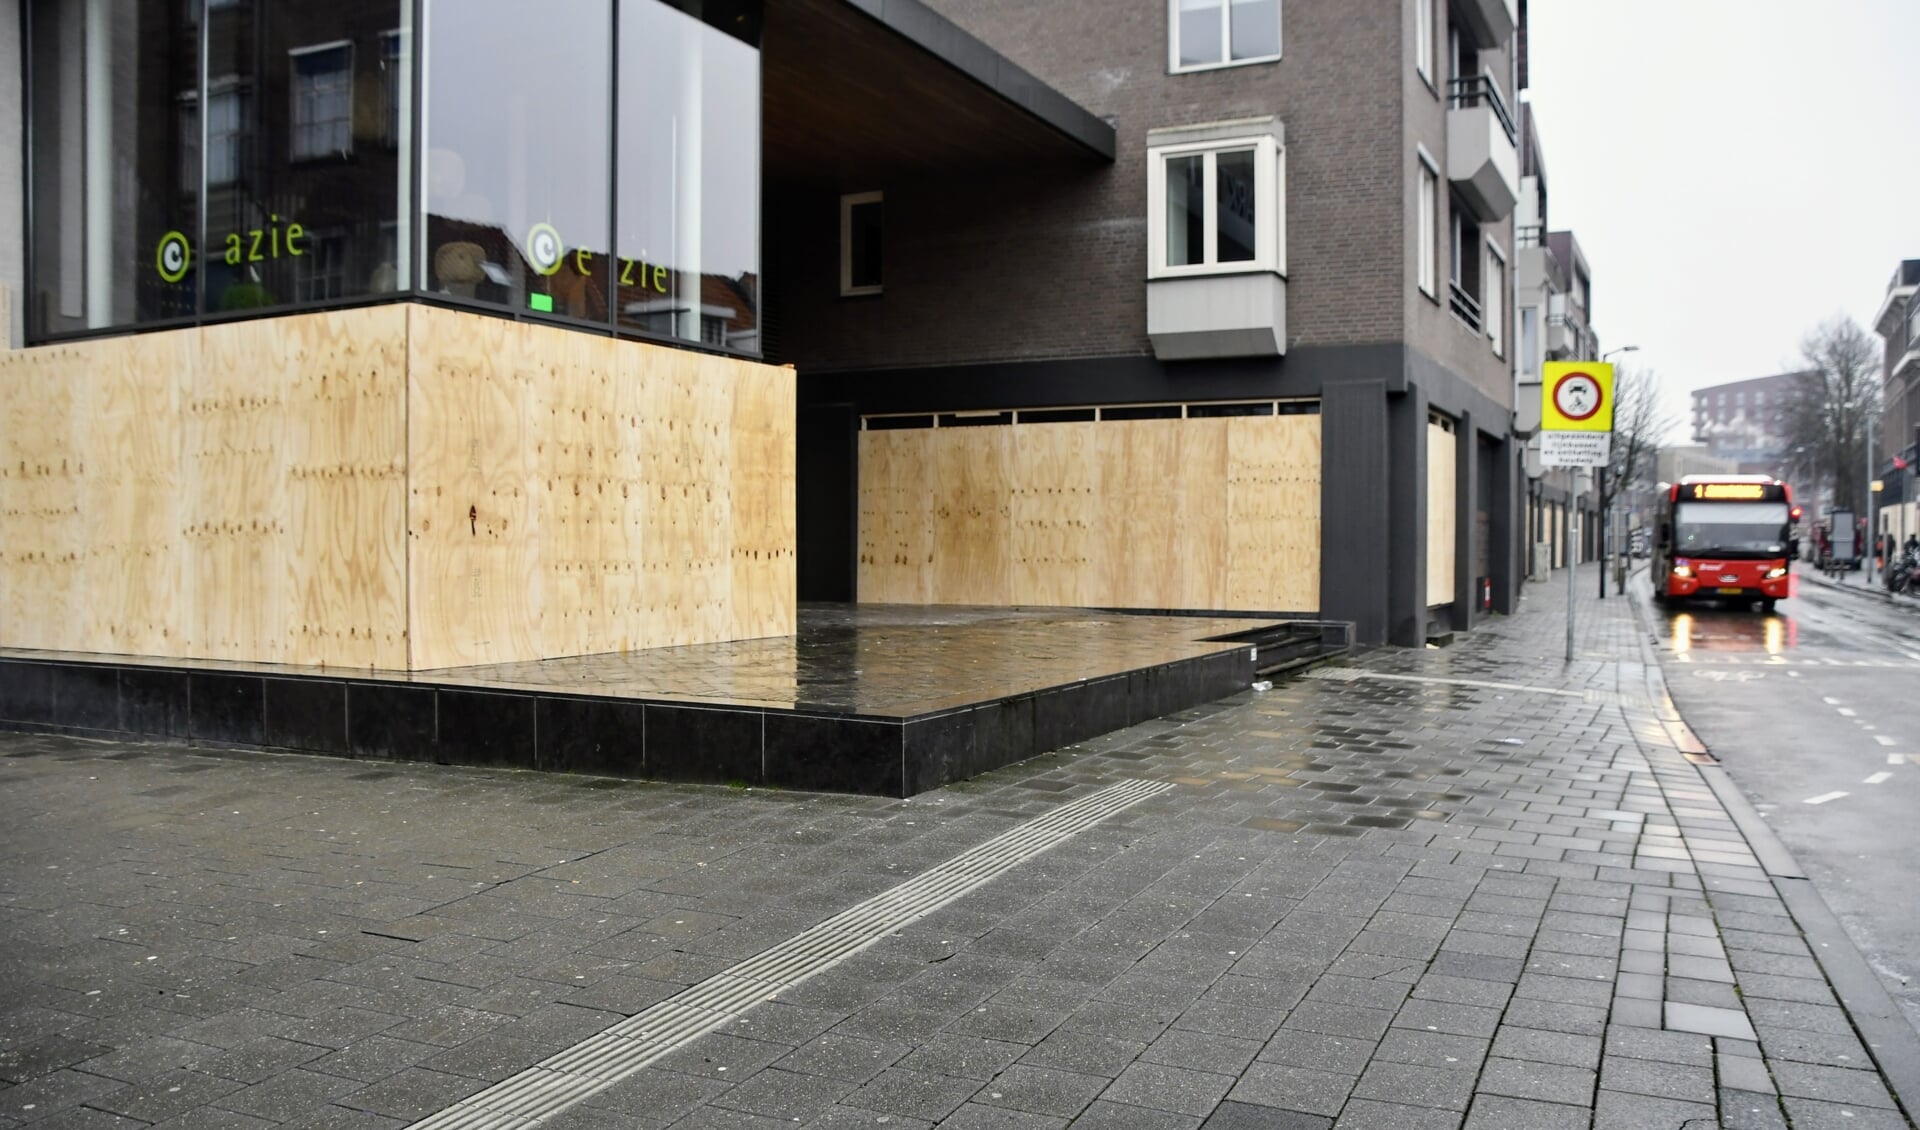 Ondernemers timmerden hun winkelramen dicht, omdat er werd opgeroepen om te gaan rellen in het Bredase centrum 